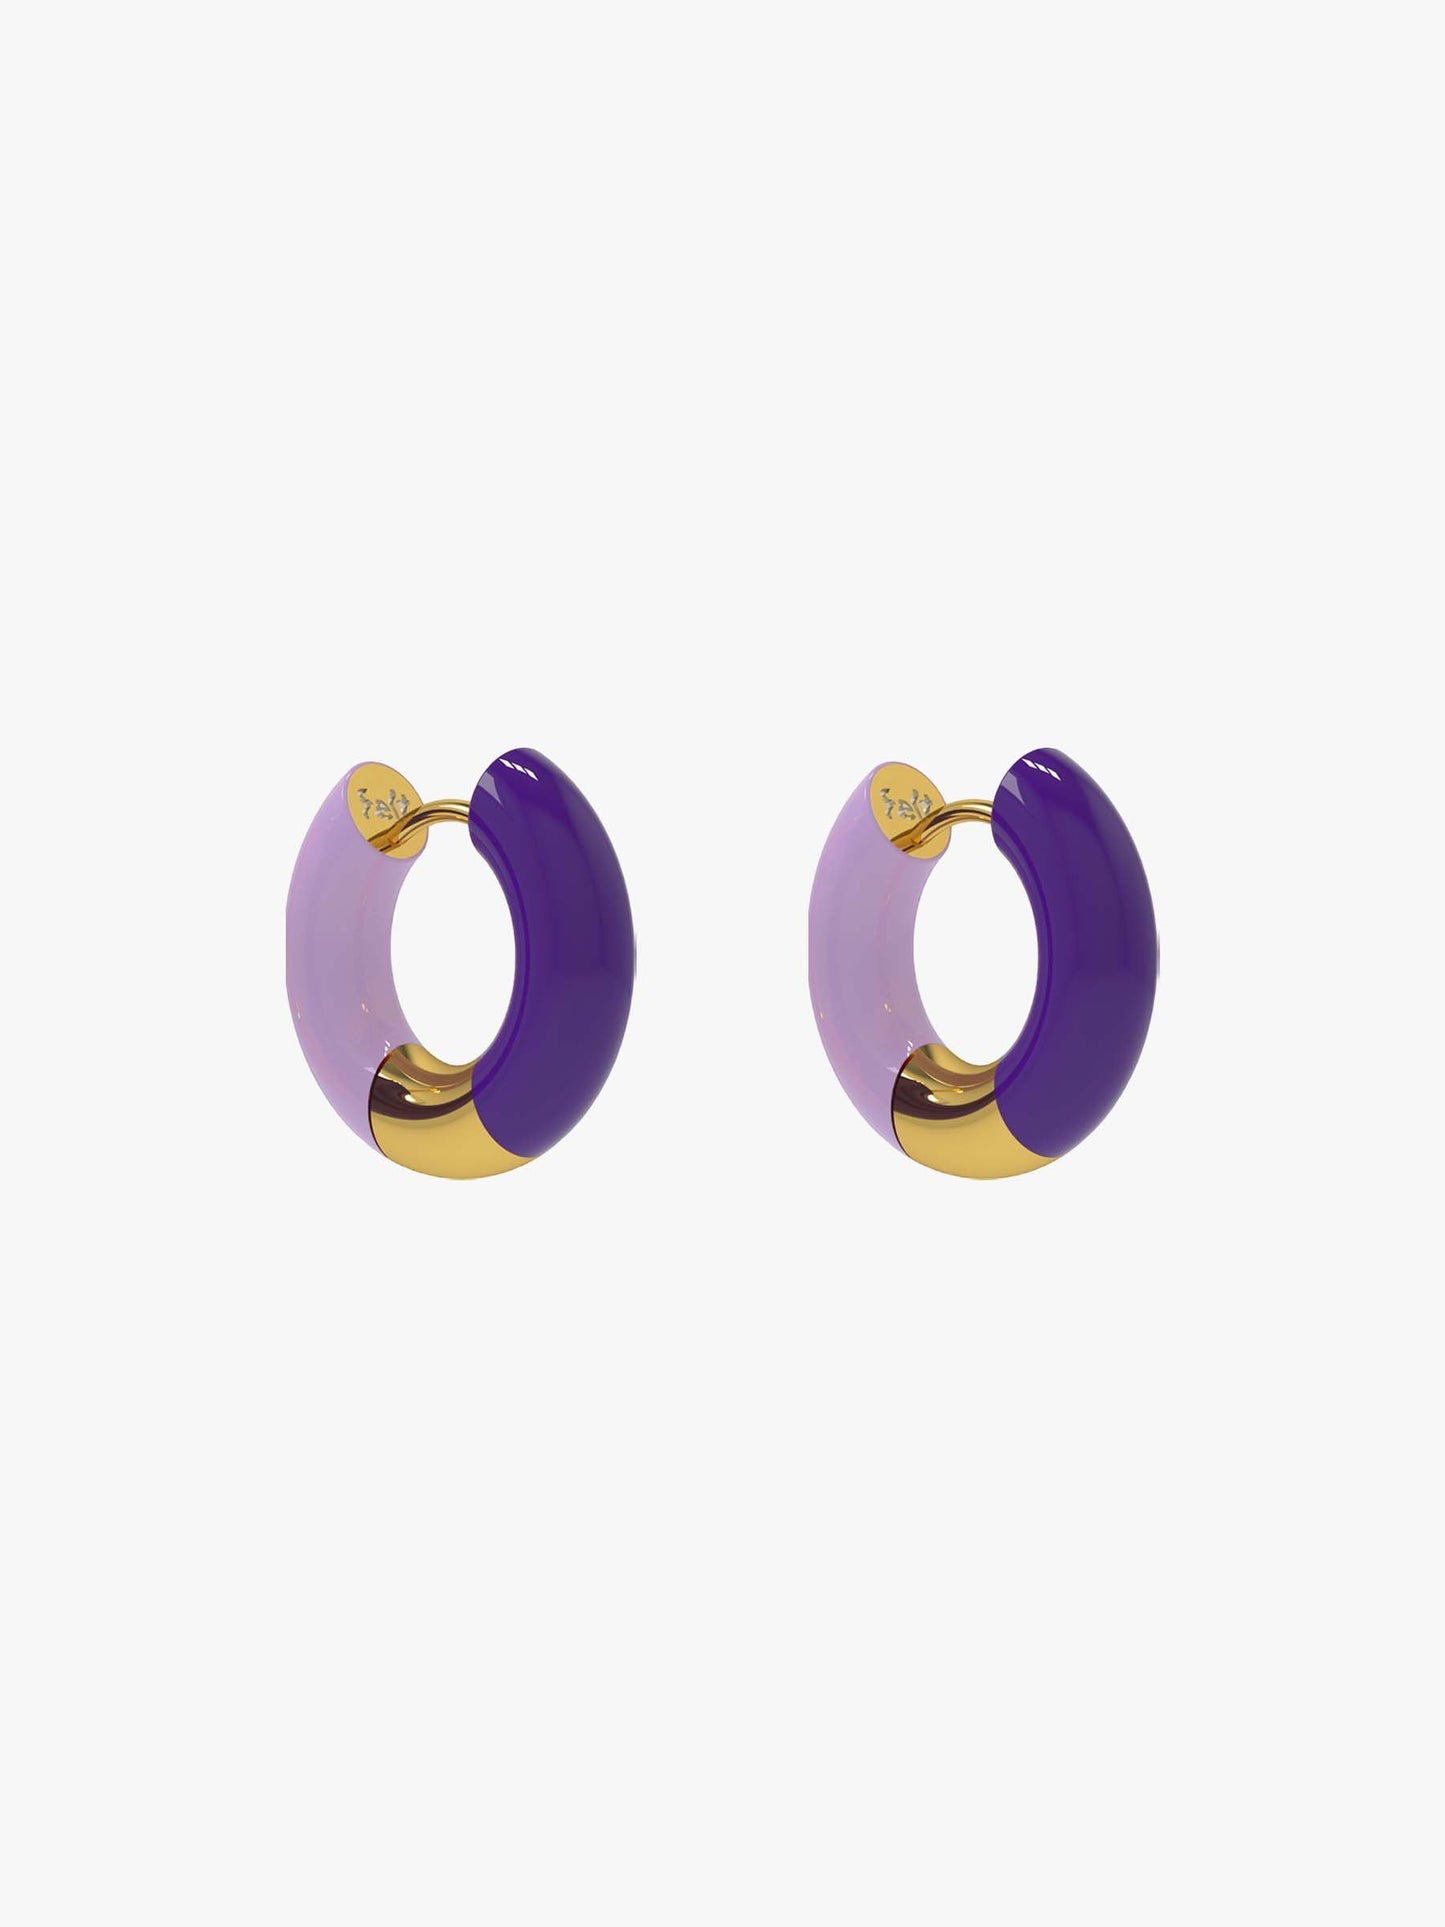 Pio lilac earring (pair)